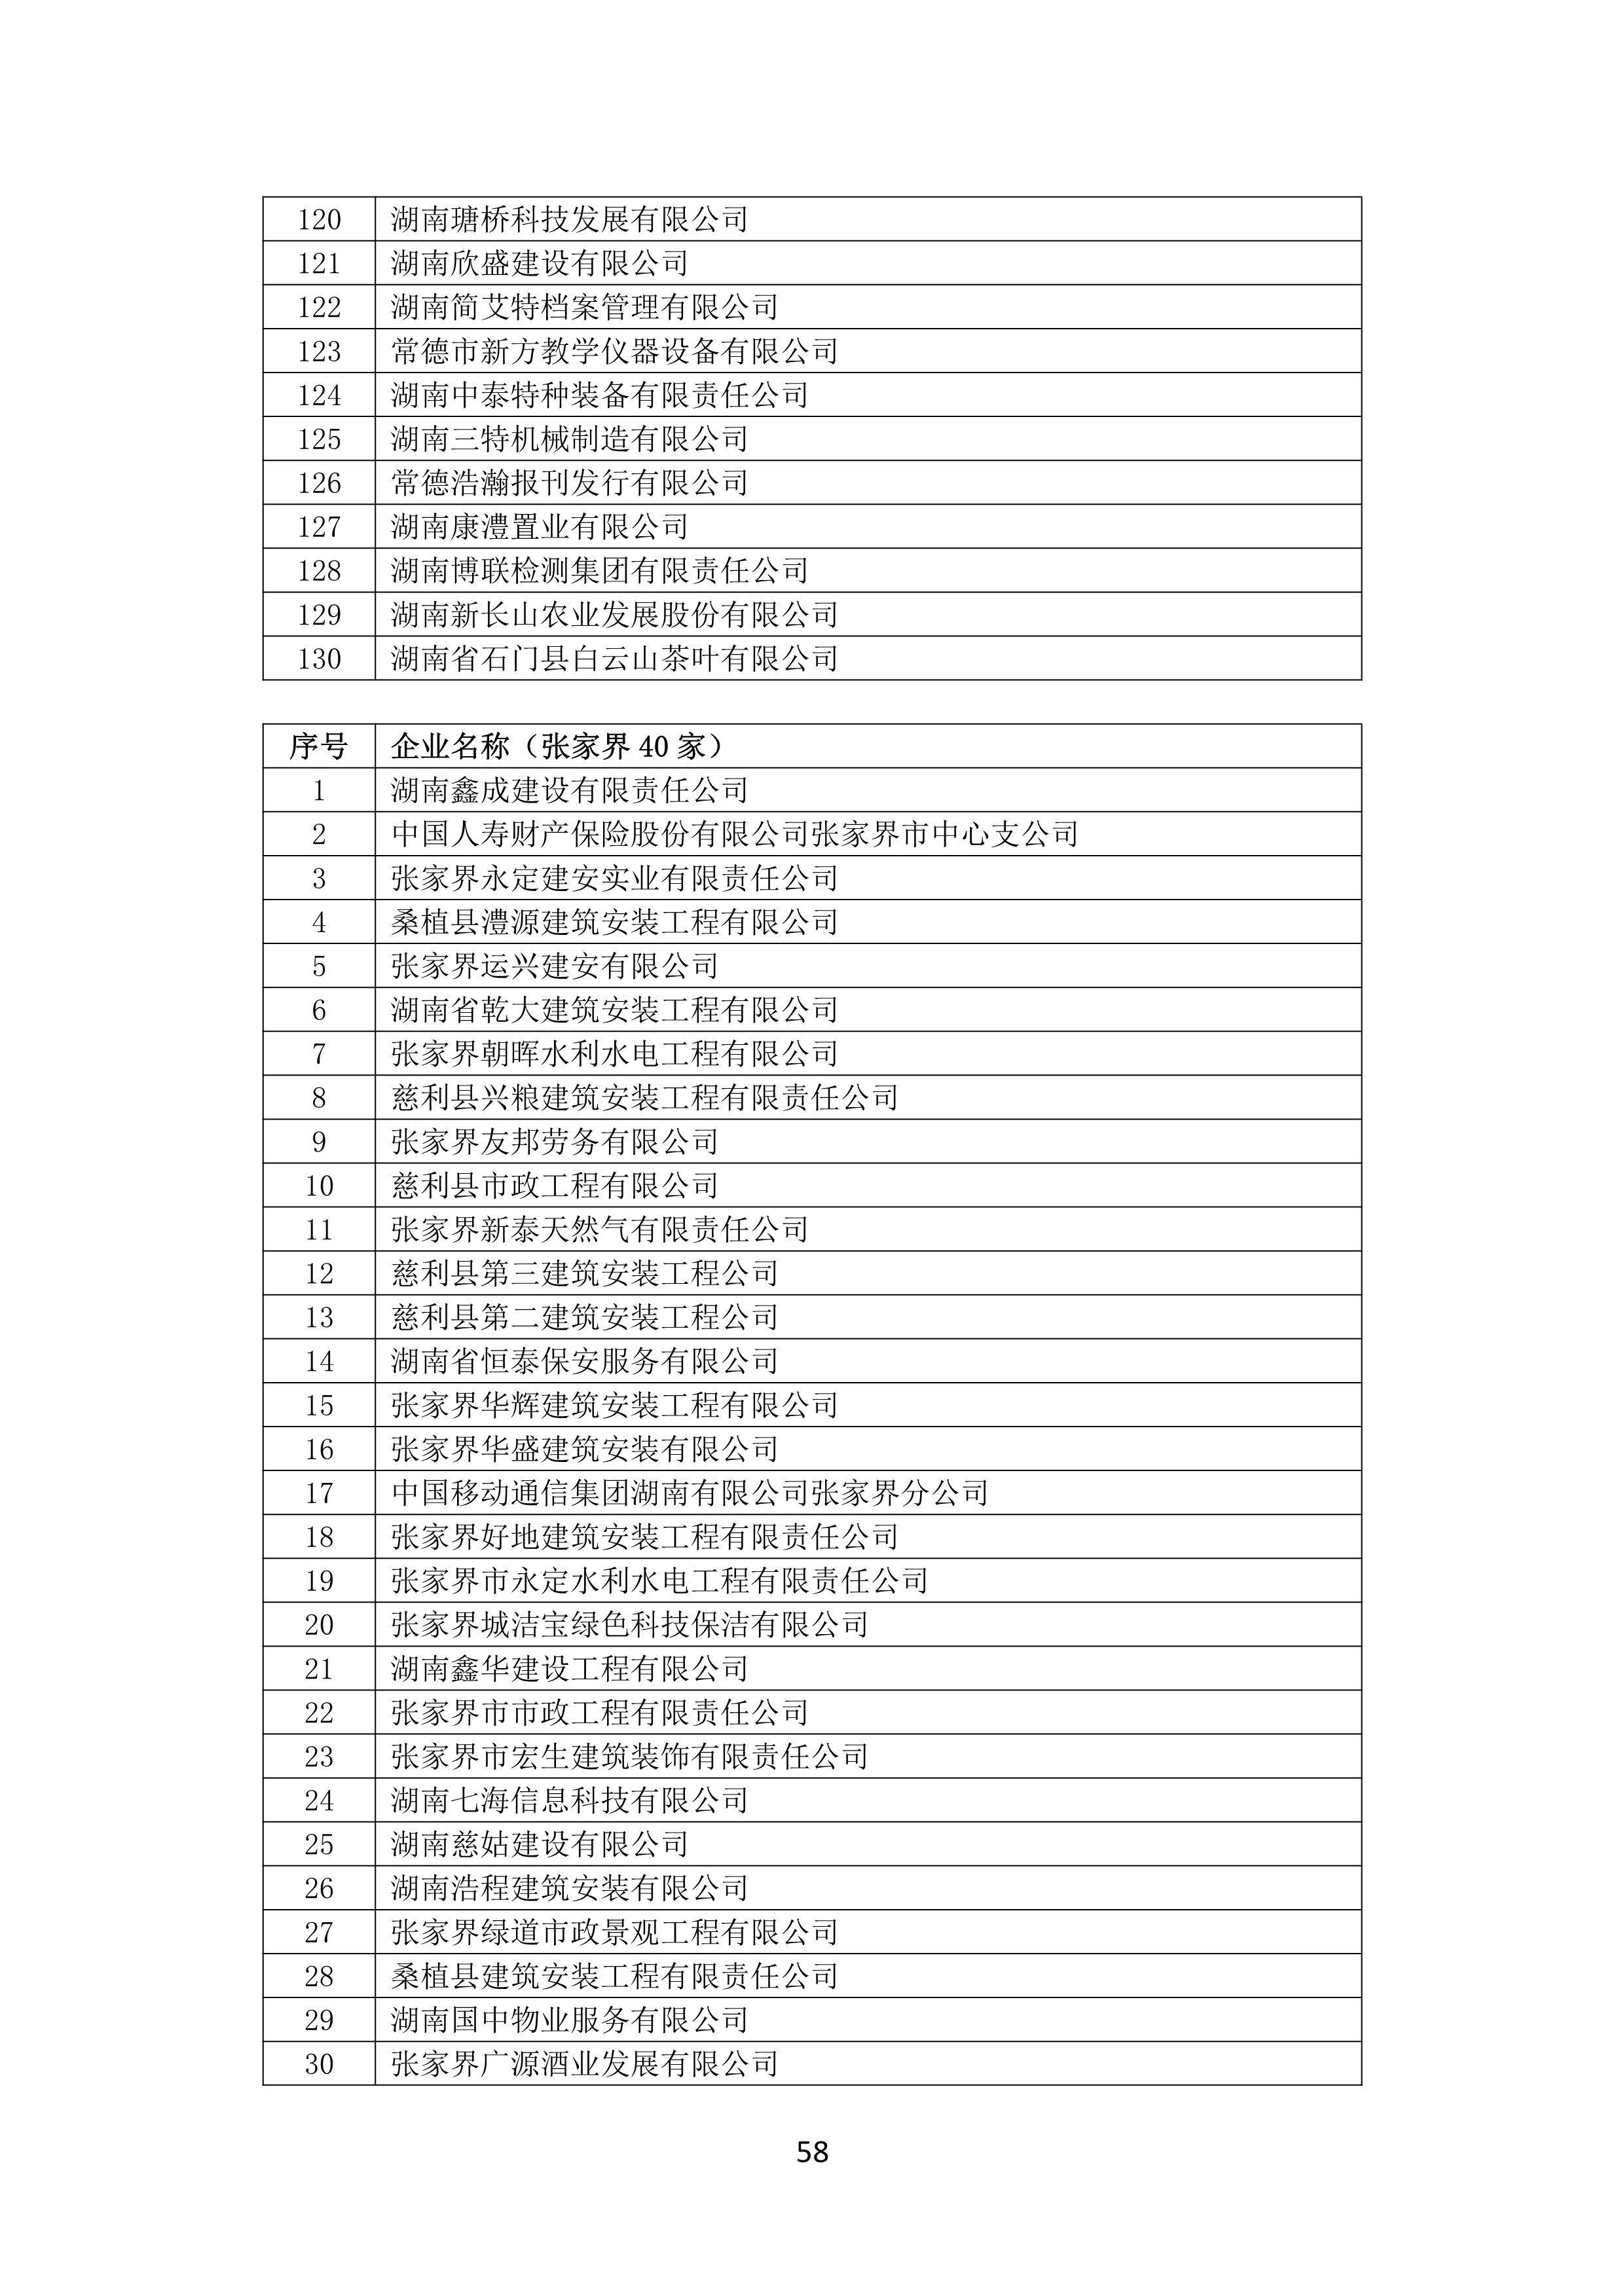 2021 年(nián)度湖南省守合同重信用企業名單_59.png